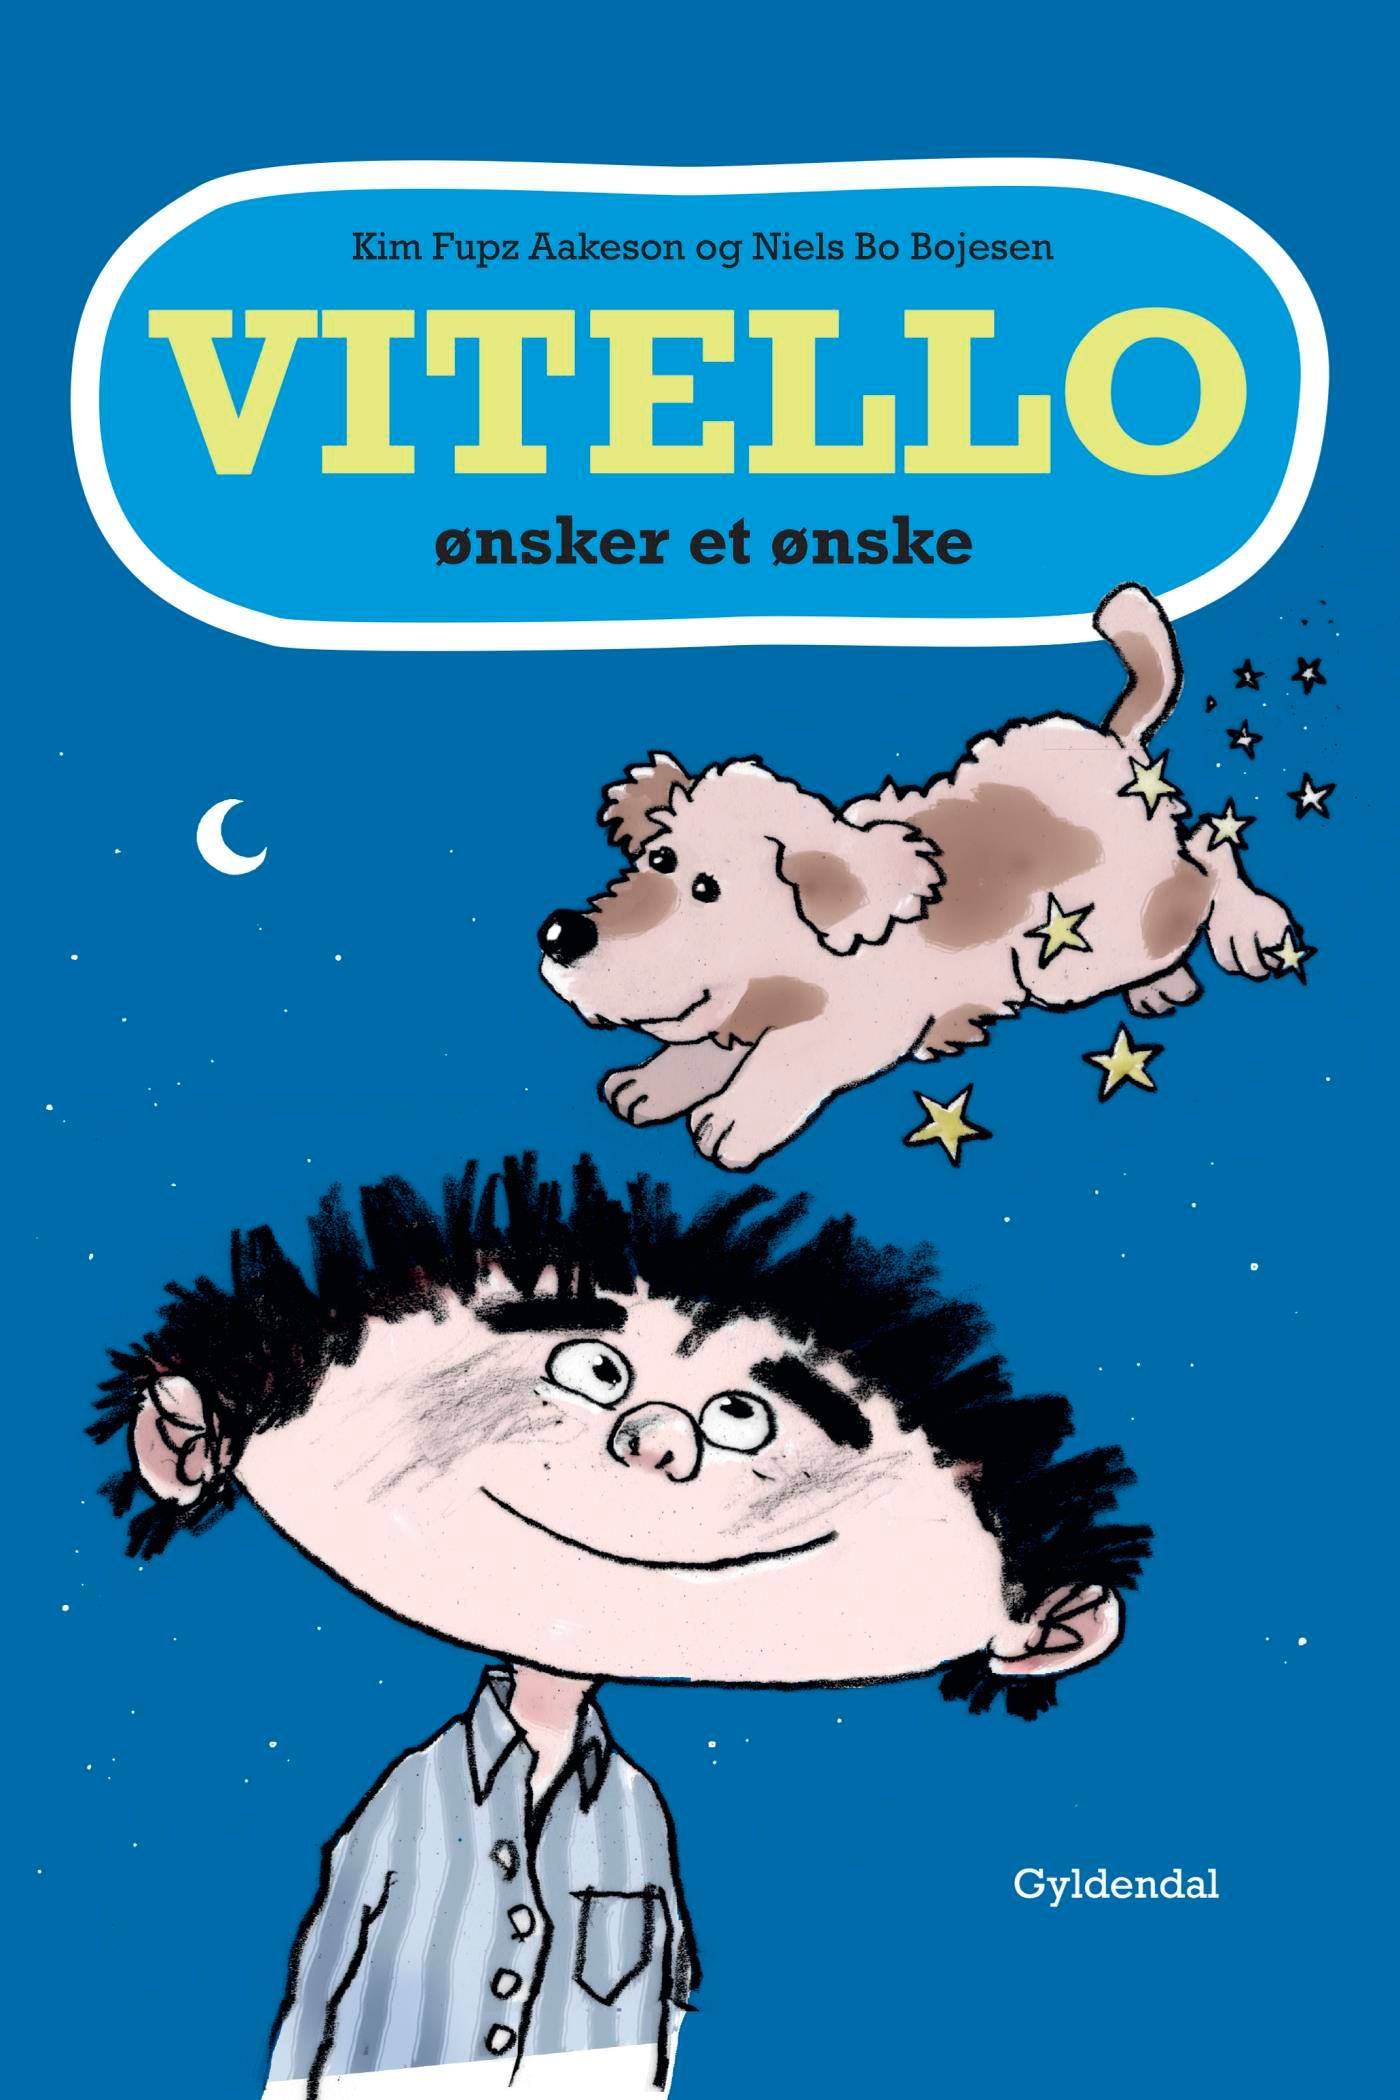 Vitello ønsker et ønske - Lyt&læs, e-bog af Niels Bo Bojesen, Kim Fupz Aakeson